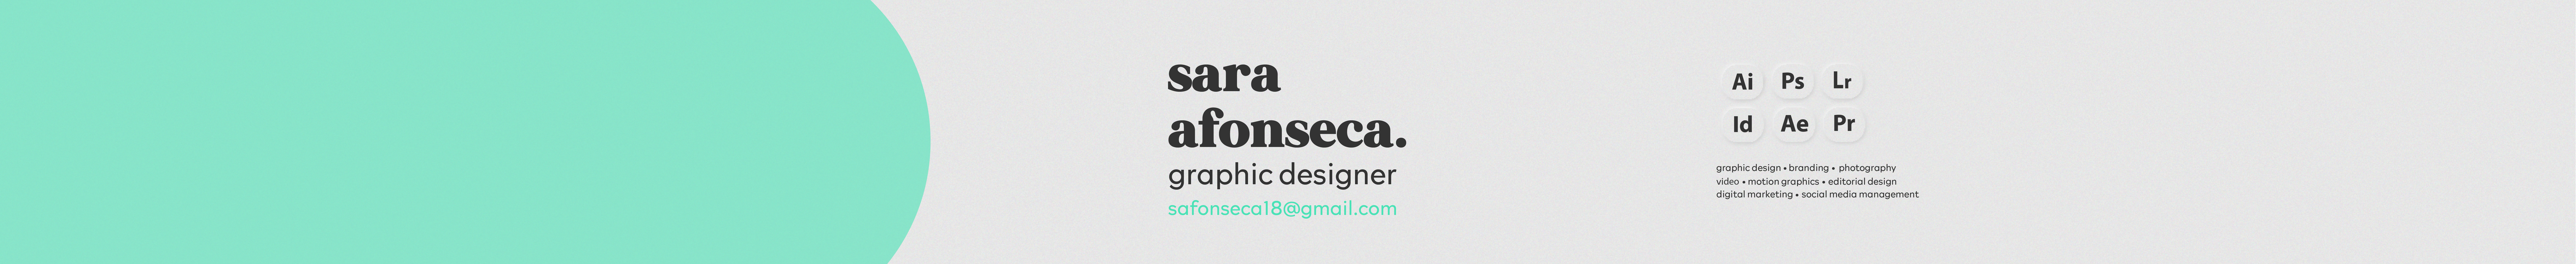 Sara Afonseca profil başlığı